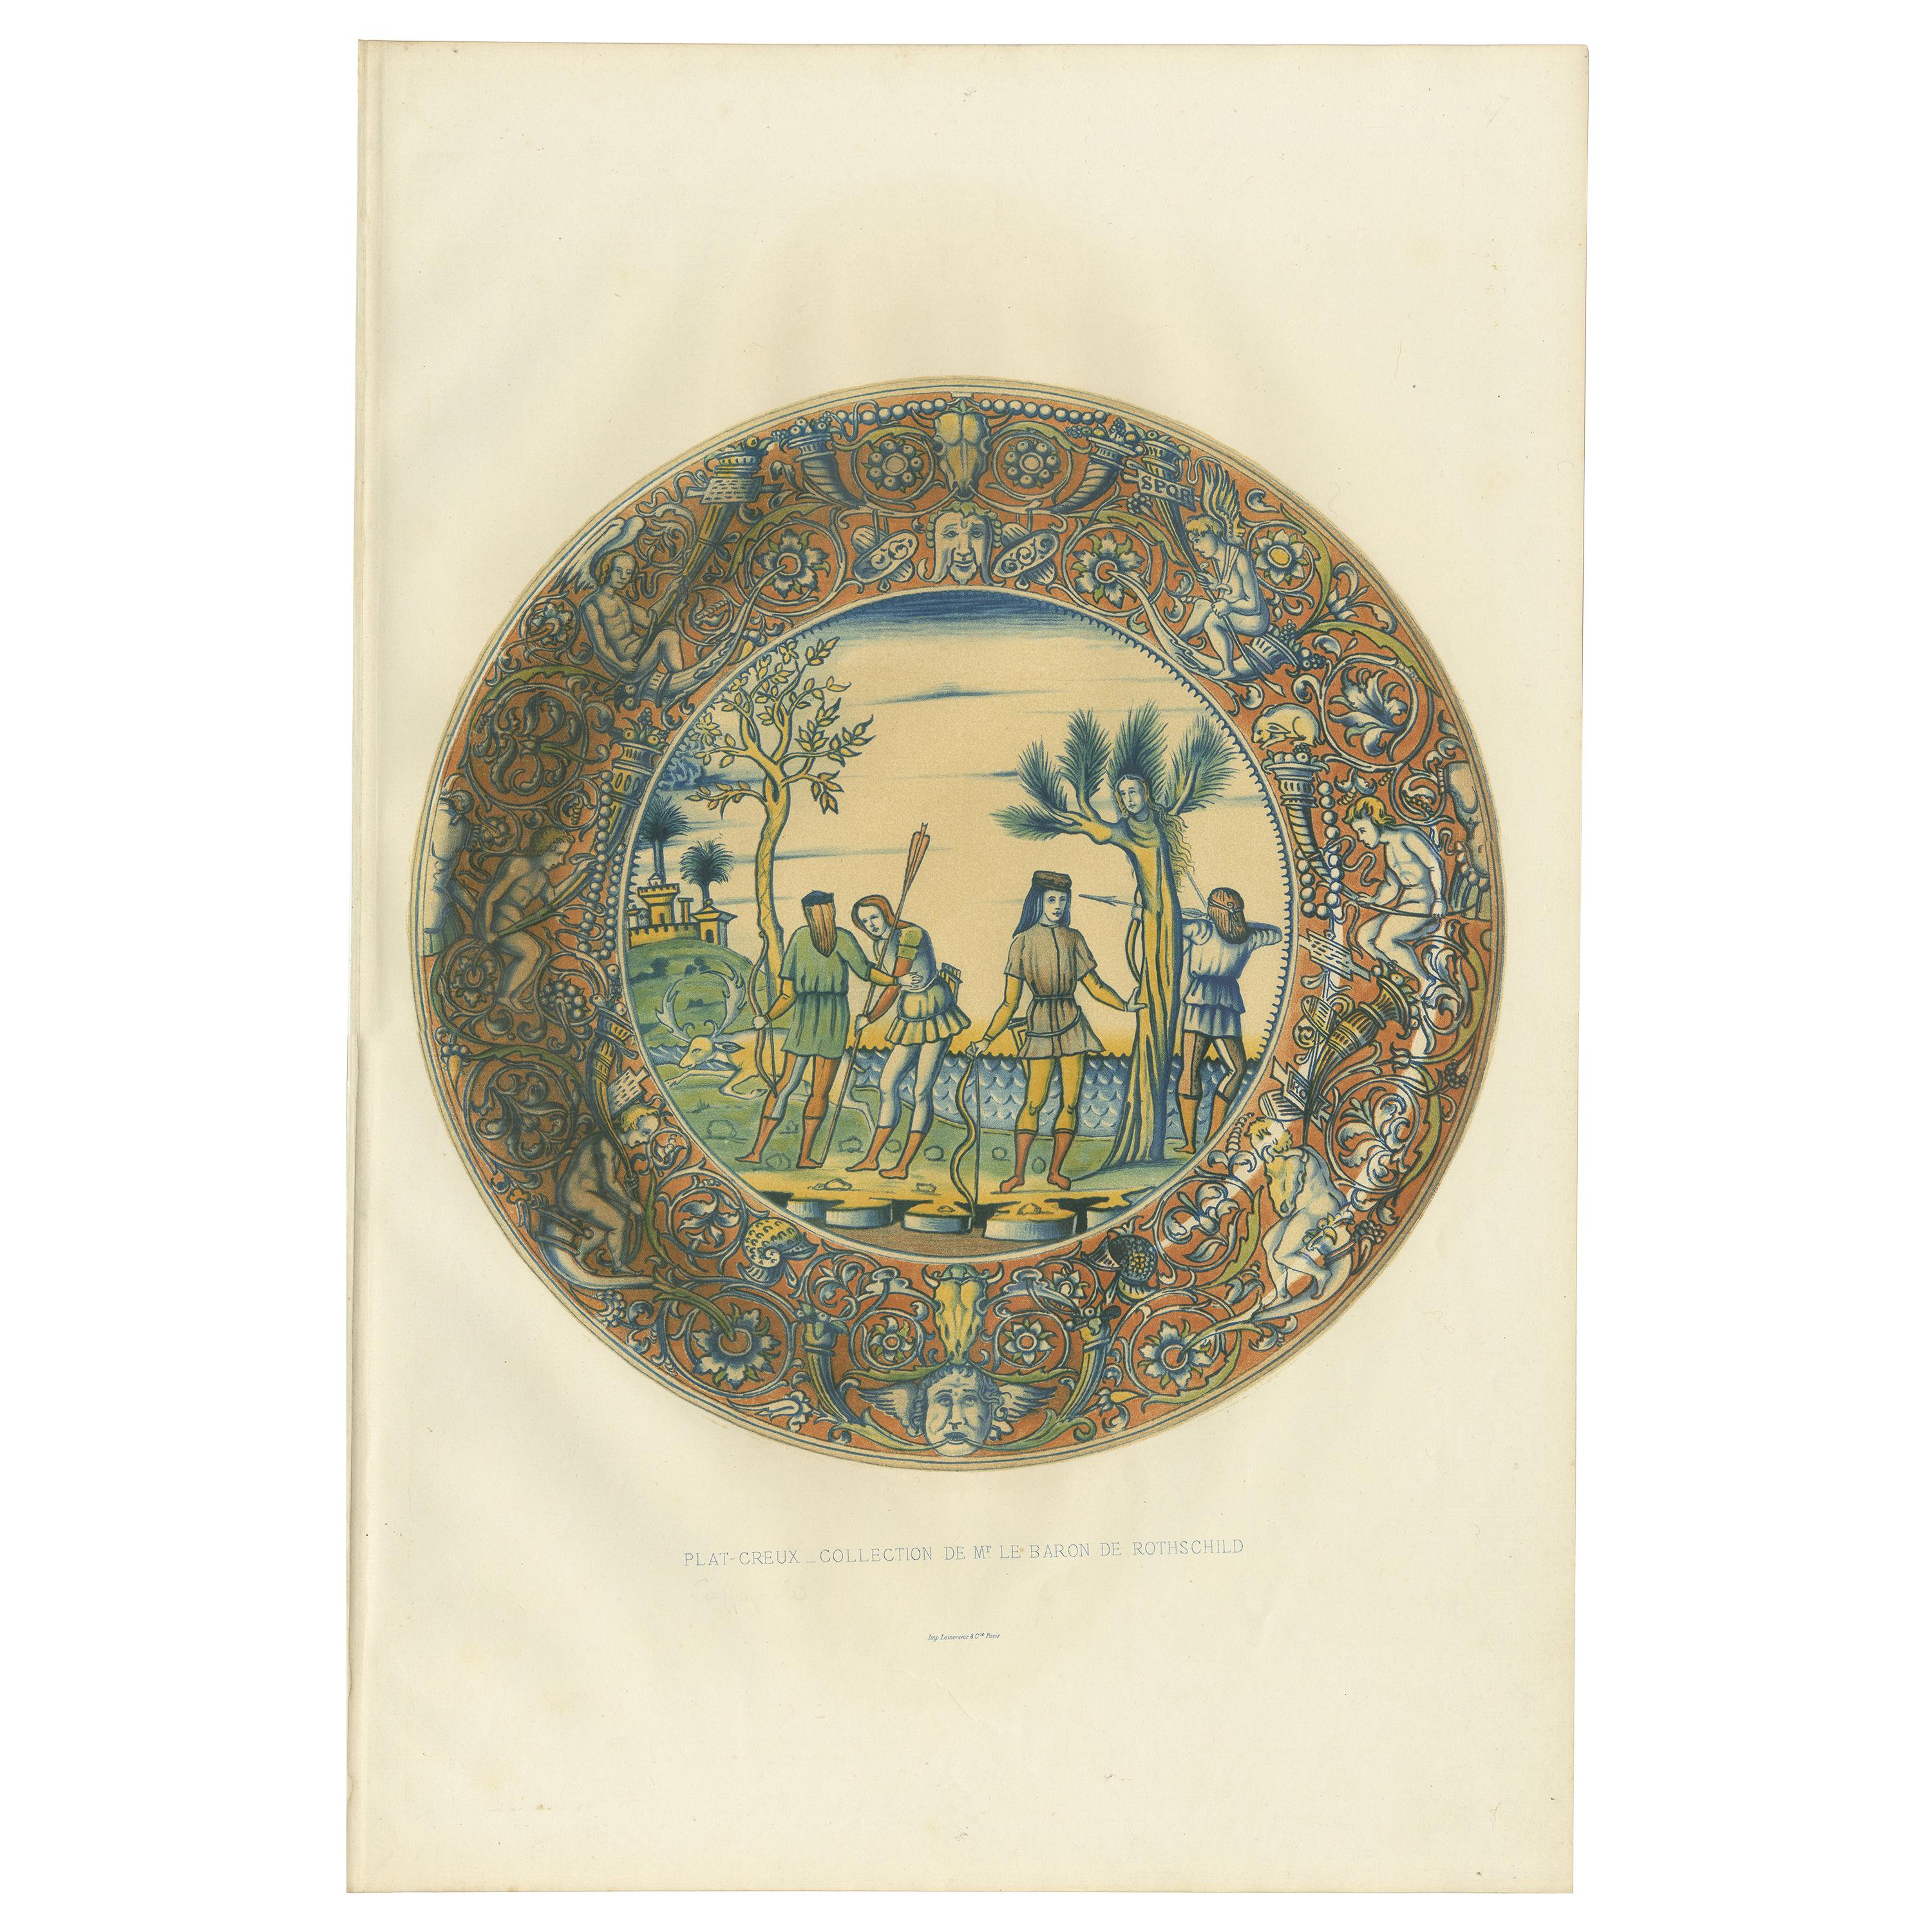 Antique Print of a Plat Creux Dish by Delange '1869' For Sale